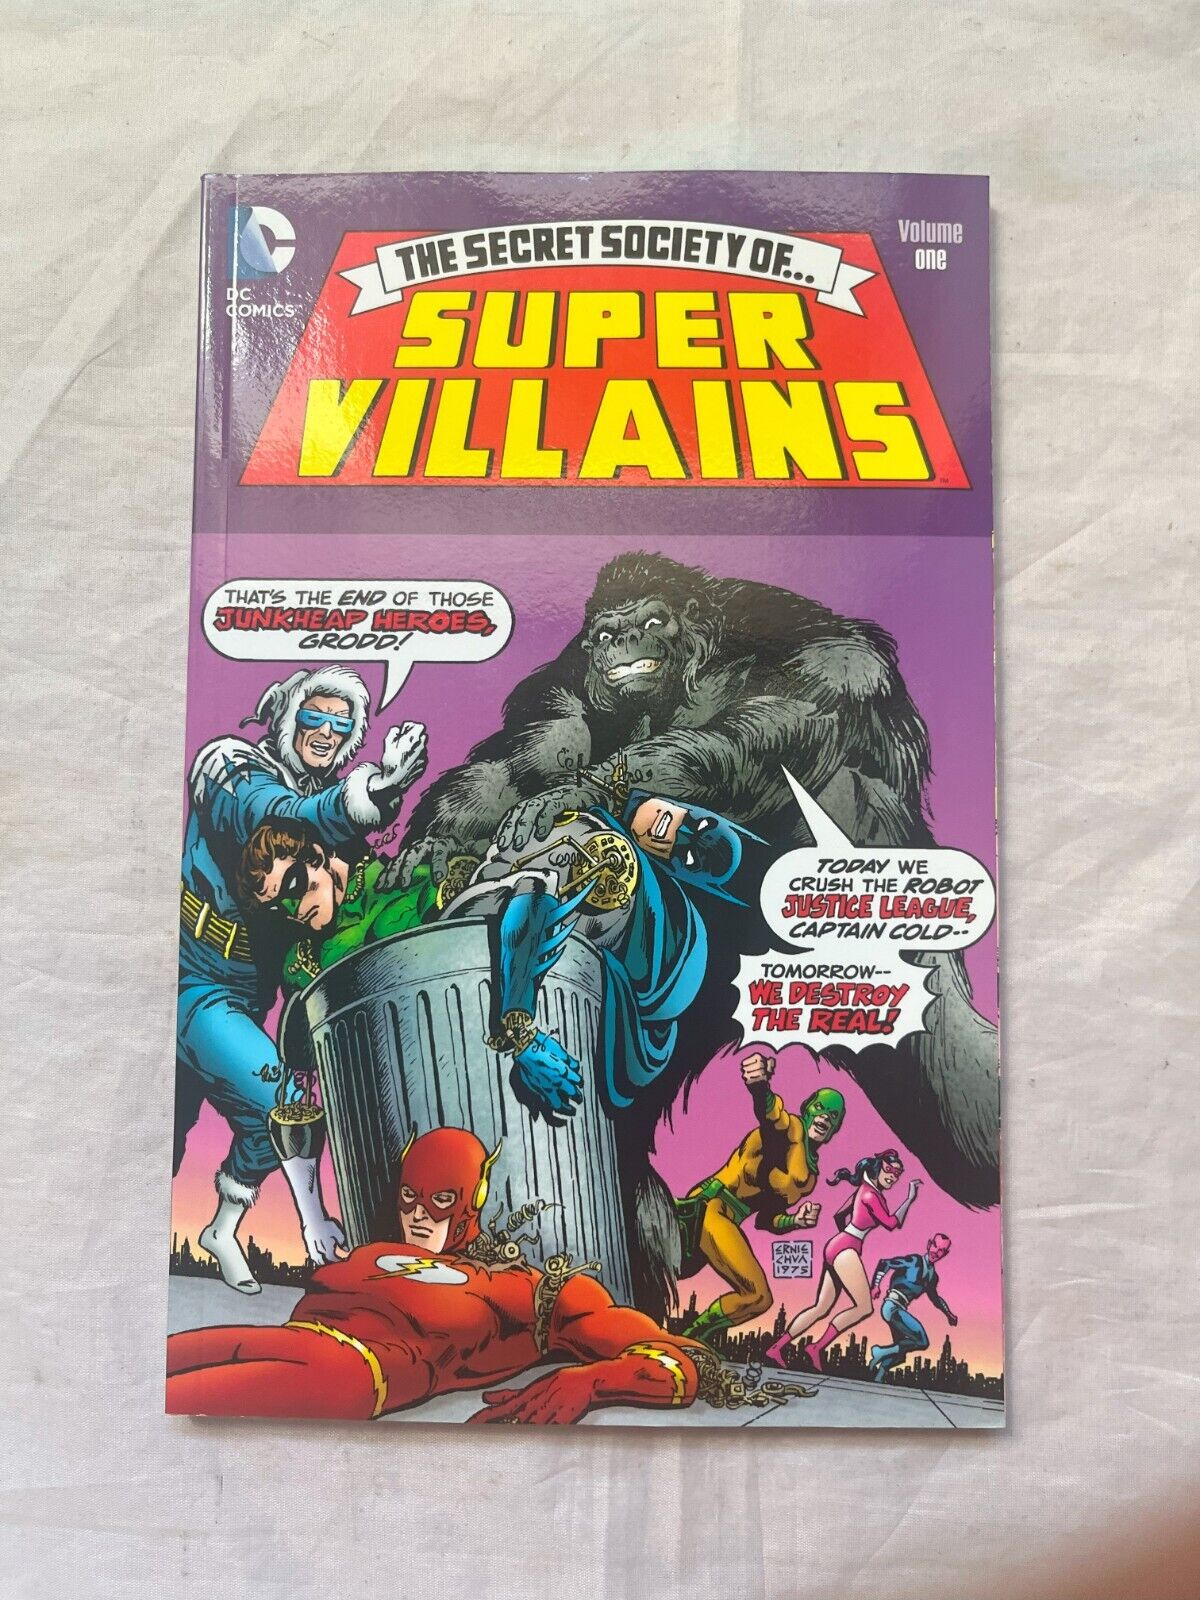 The Secret Society of Super-Villains #1 (DC Comics, October 2011)